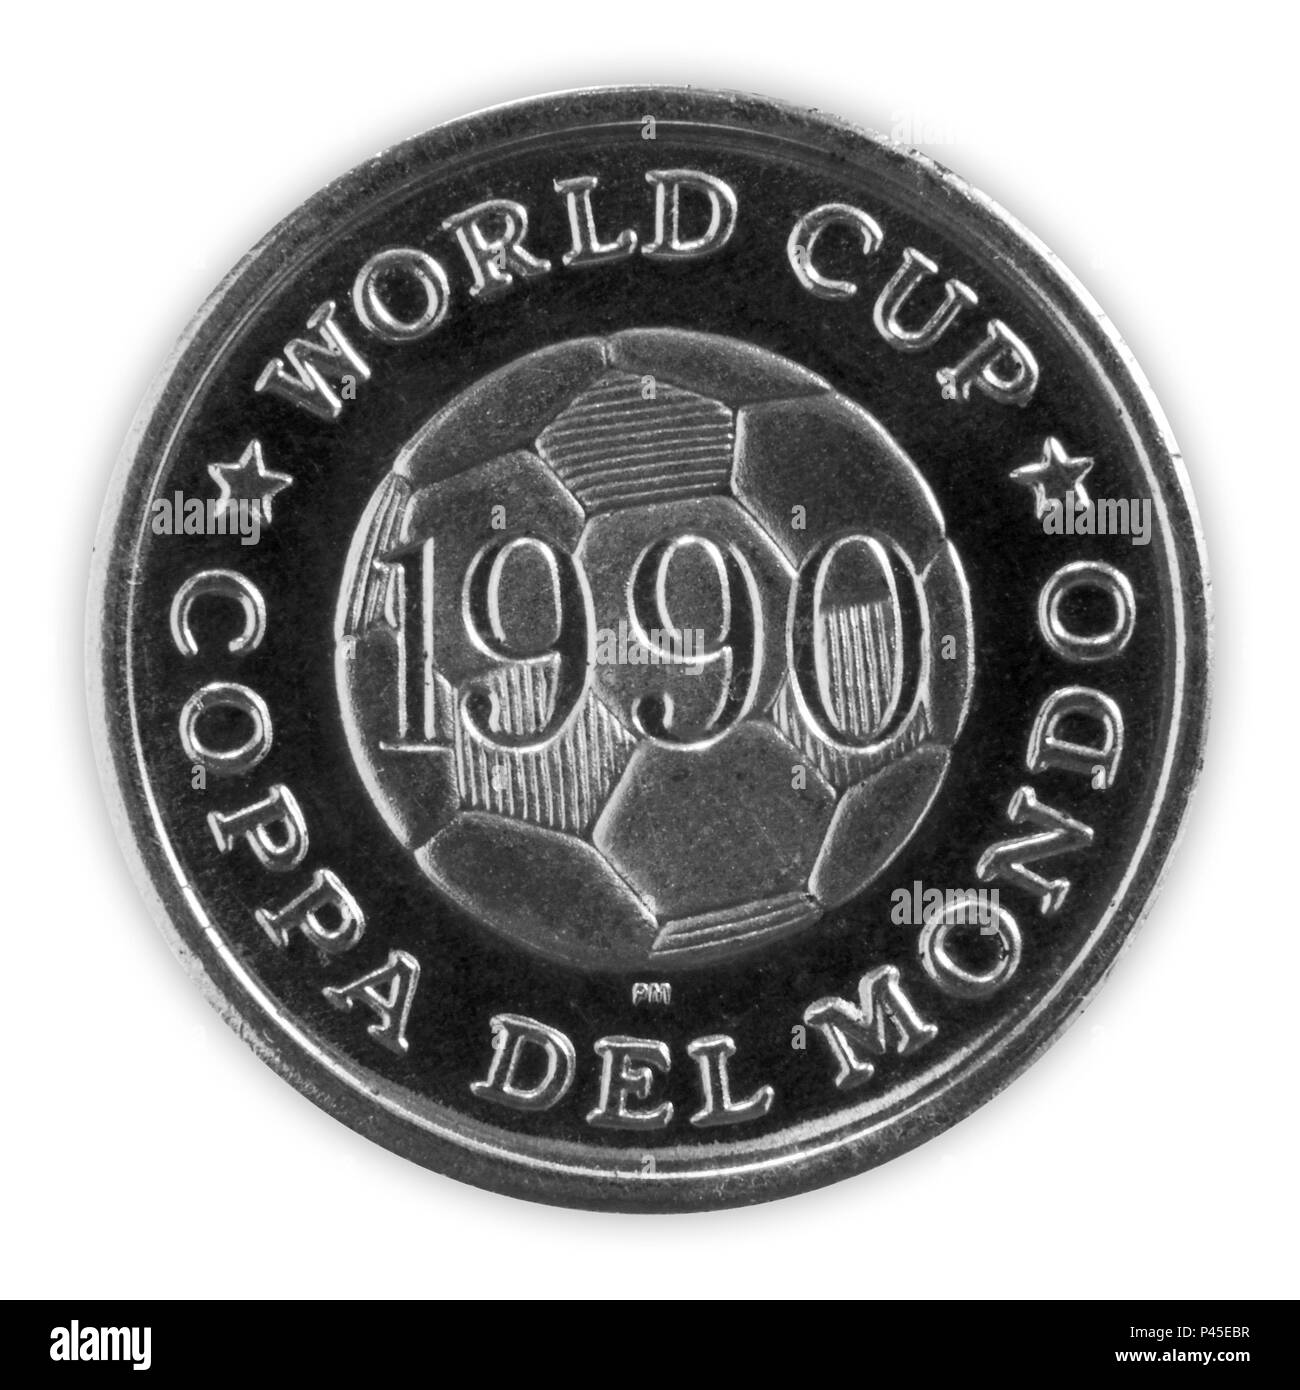 Italie - le 18 juin 2018 Coupe du Monde FIFA 1990 : médaille commémorative intitulée World Cup Coppa Del Mondo dispose d''une image d'un football Banque D'Images